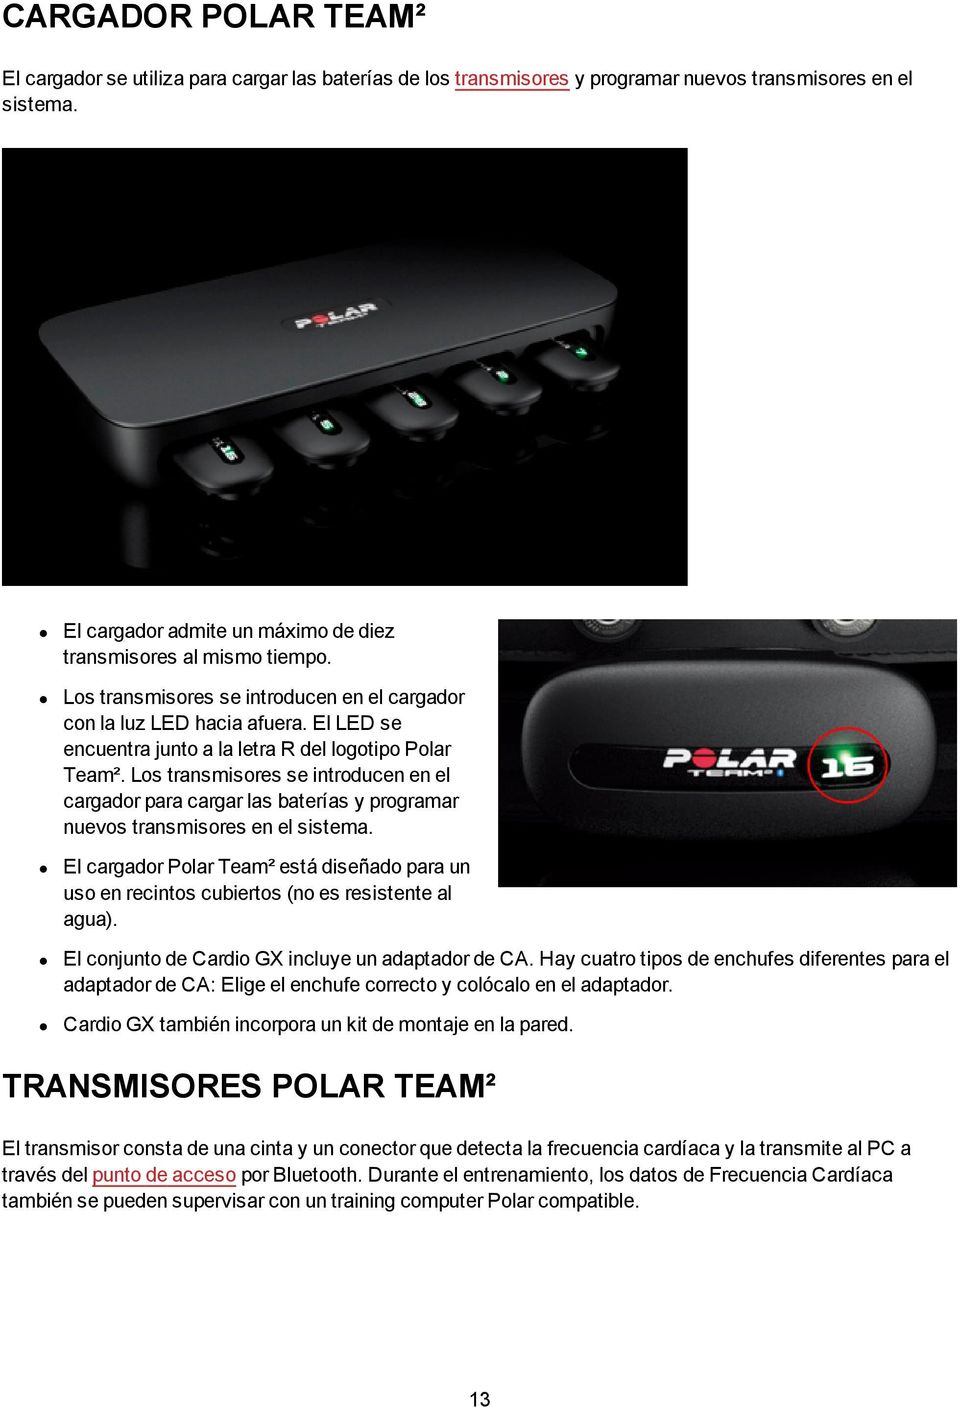 El LED se encuentra junto a la letra R del logotipo Polar Team². Los transmisores se introducen en el cargador para cargar las baterías y programar nuevos transmisores en el sistema.